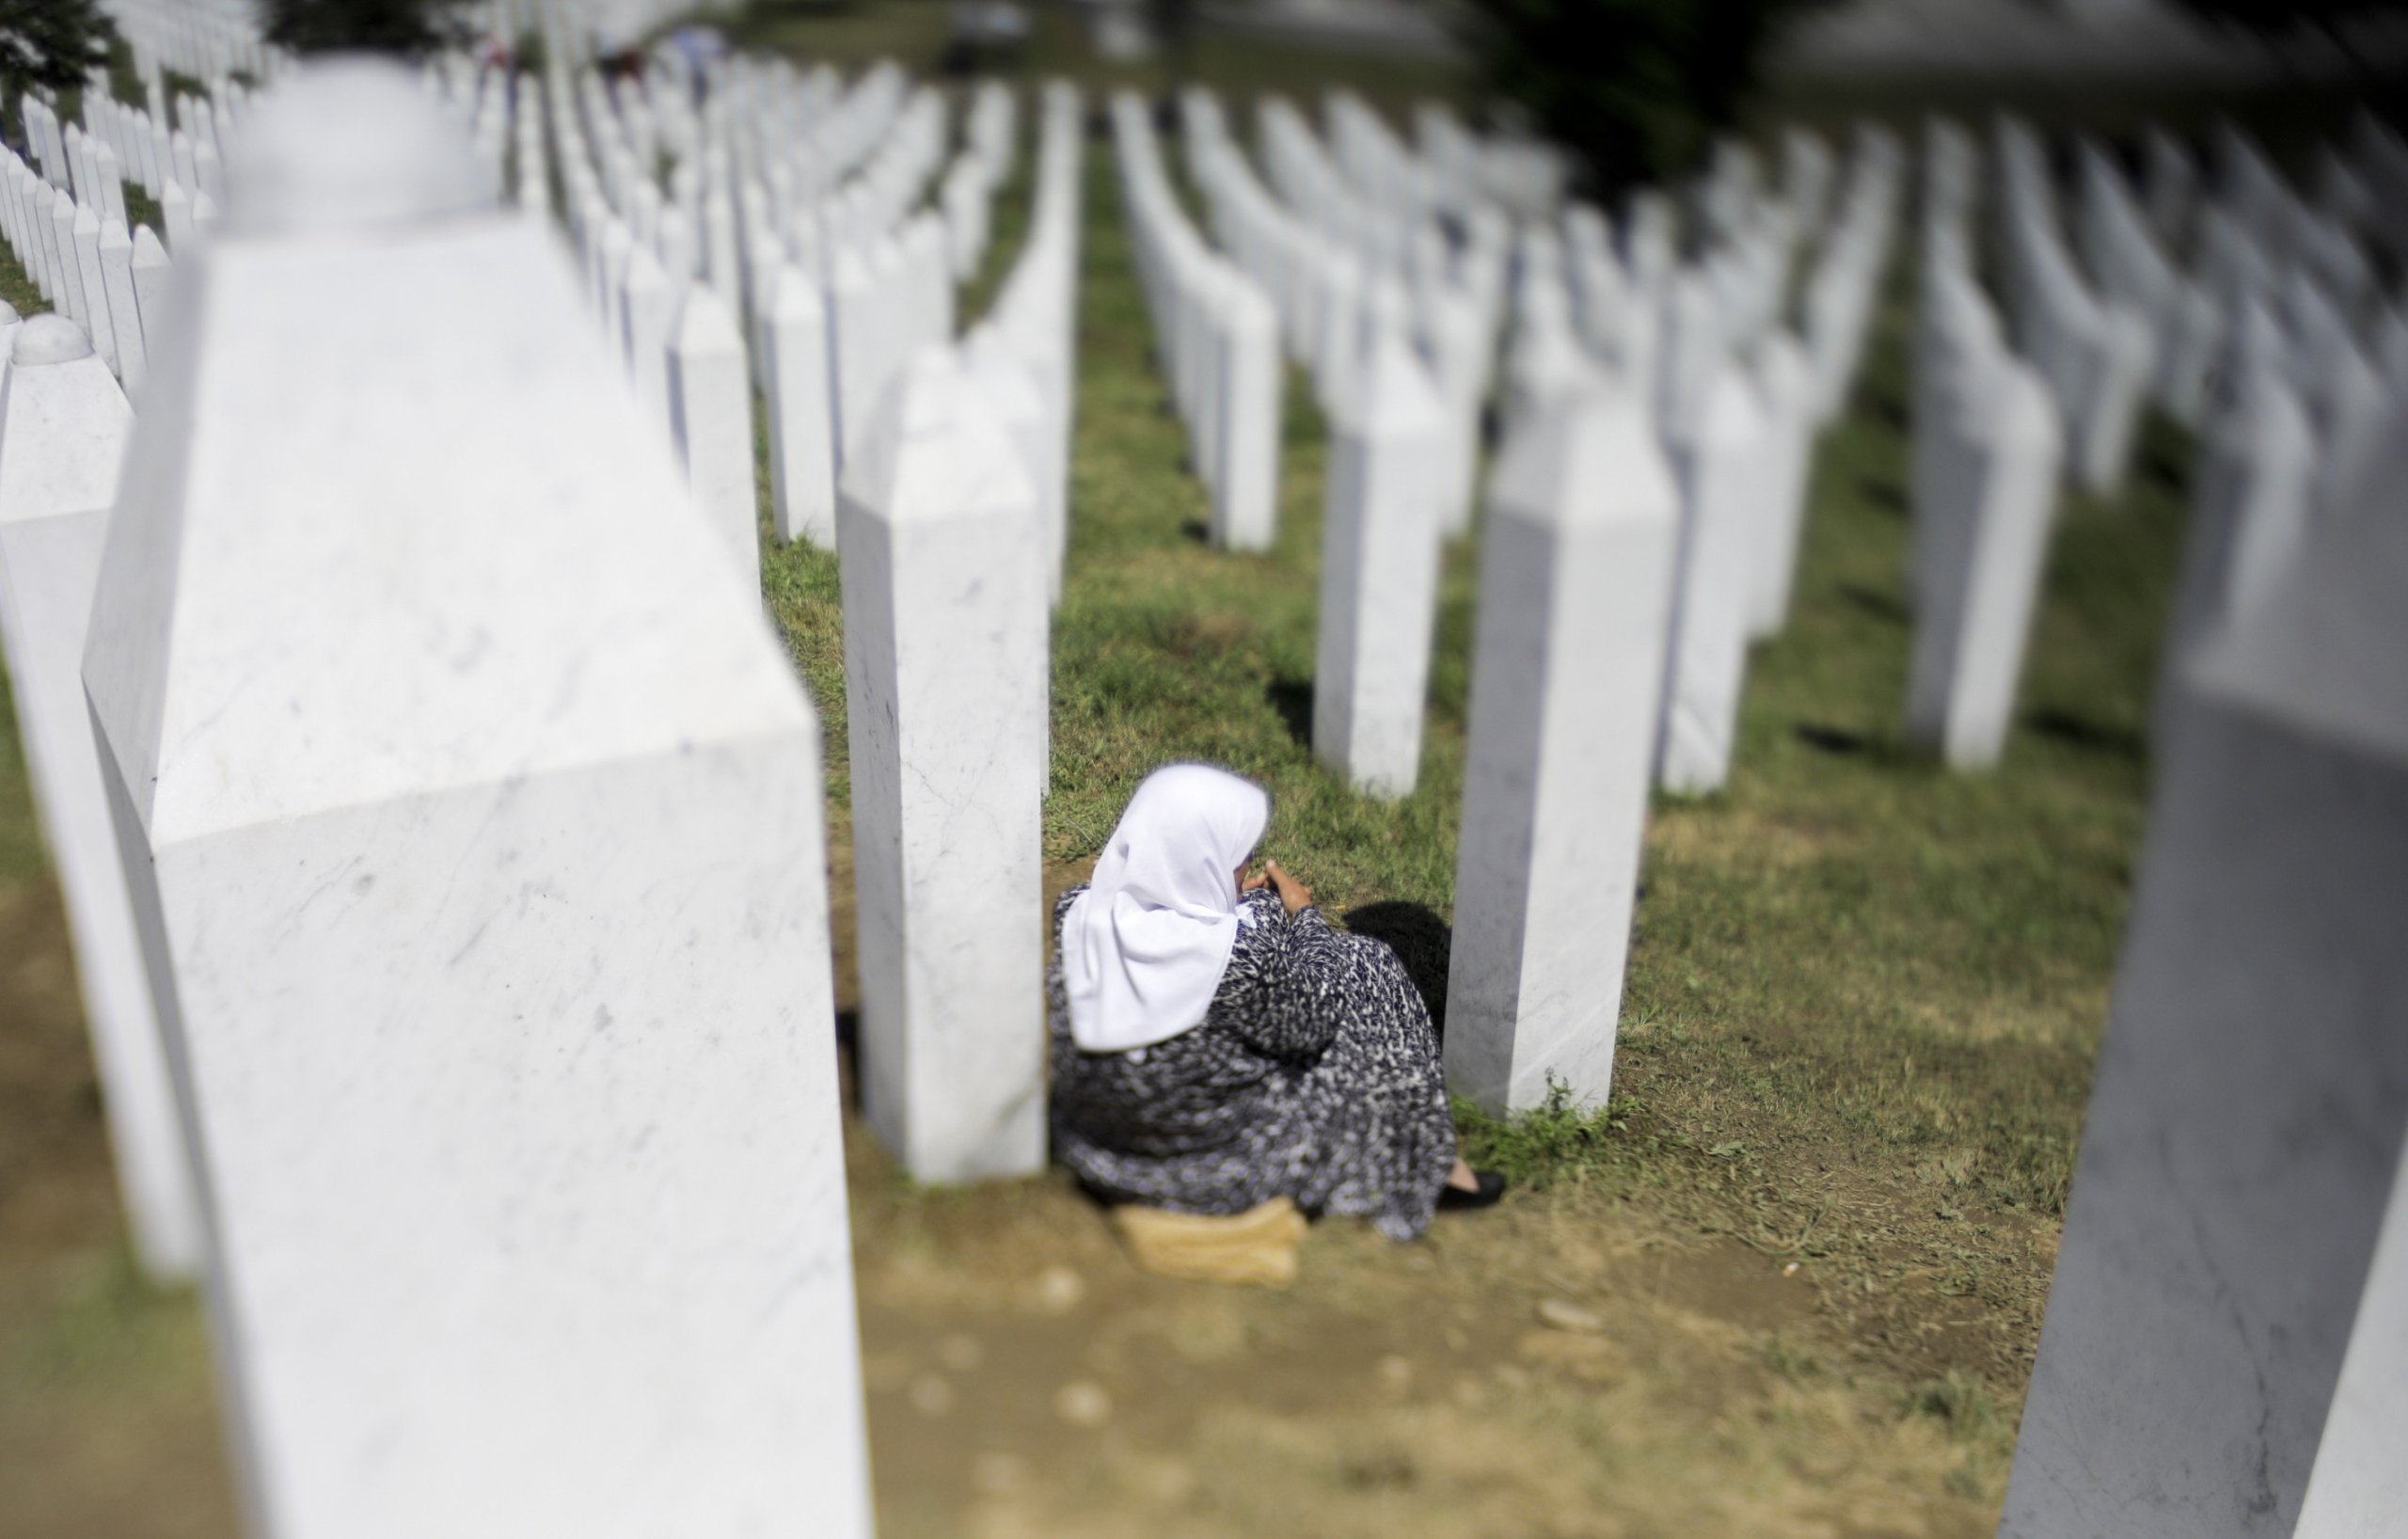 Holandija isplatila skoro 9 miliona eura srodnicima žrtava genocida u Srebrenici